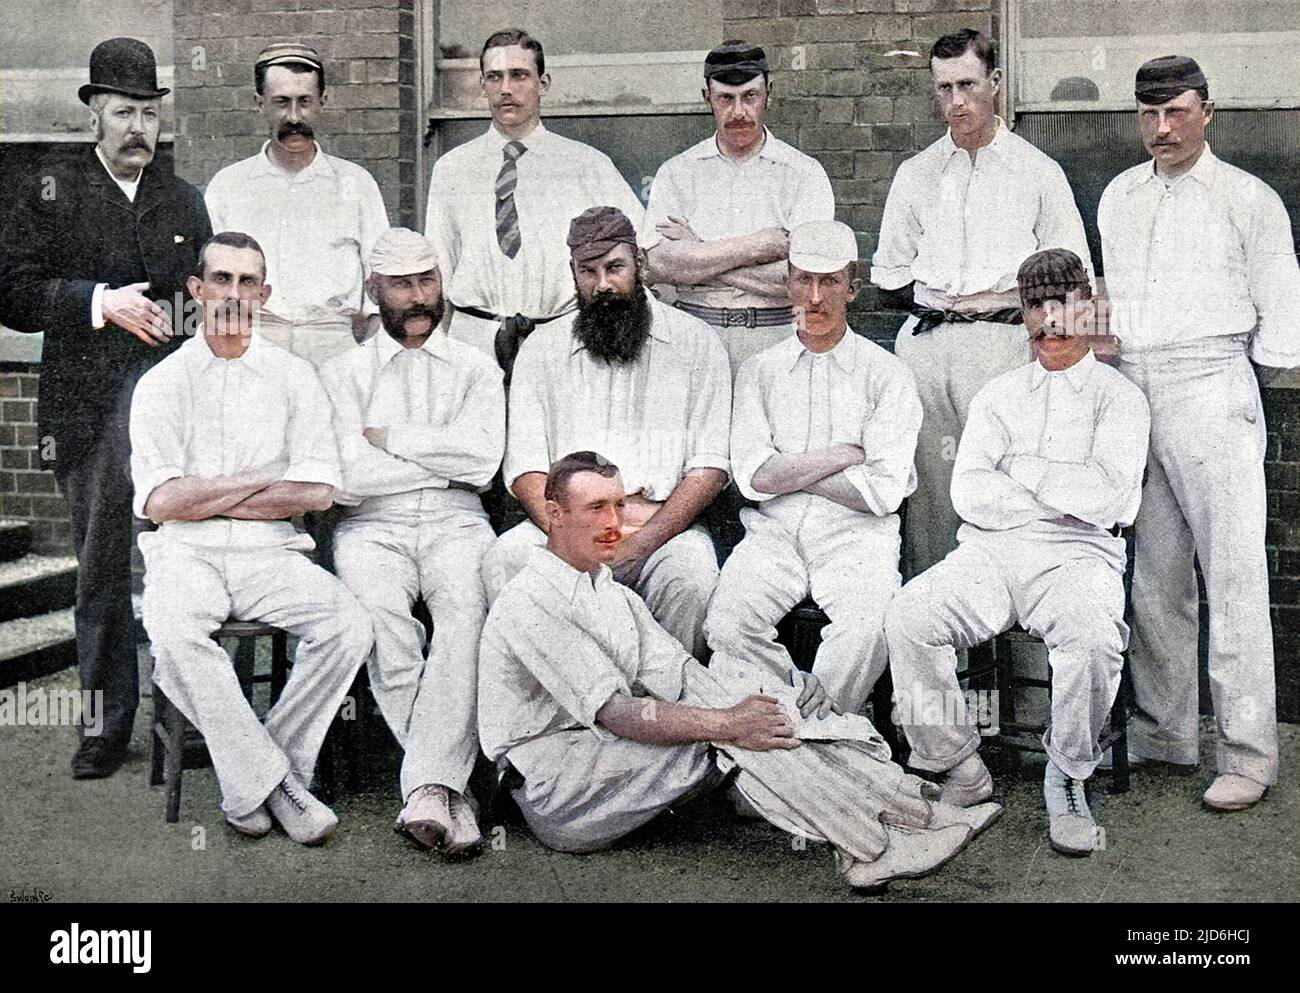 Foto des Cricket-Teams von Gloucestershire County für die Saison 1892. Hintere Reihe, von links nach rechts: J.Smith (Torschütze), E. Sainsbury, S.A.P. Kitcat, Roberts, Murch, Maler. Mittlere Reihe, von links nach rechts: Captain A.H. Luard, E.M. Gnade, Dr. W.G. Gnade (Kapitän), Woof, O.G. Radcliffe. Erste Reihe: Brett. Kolorierte Version von: 10218928 Datum: 1892 Stockfoto